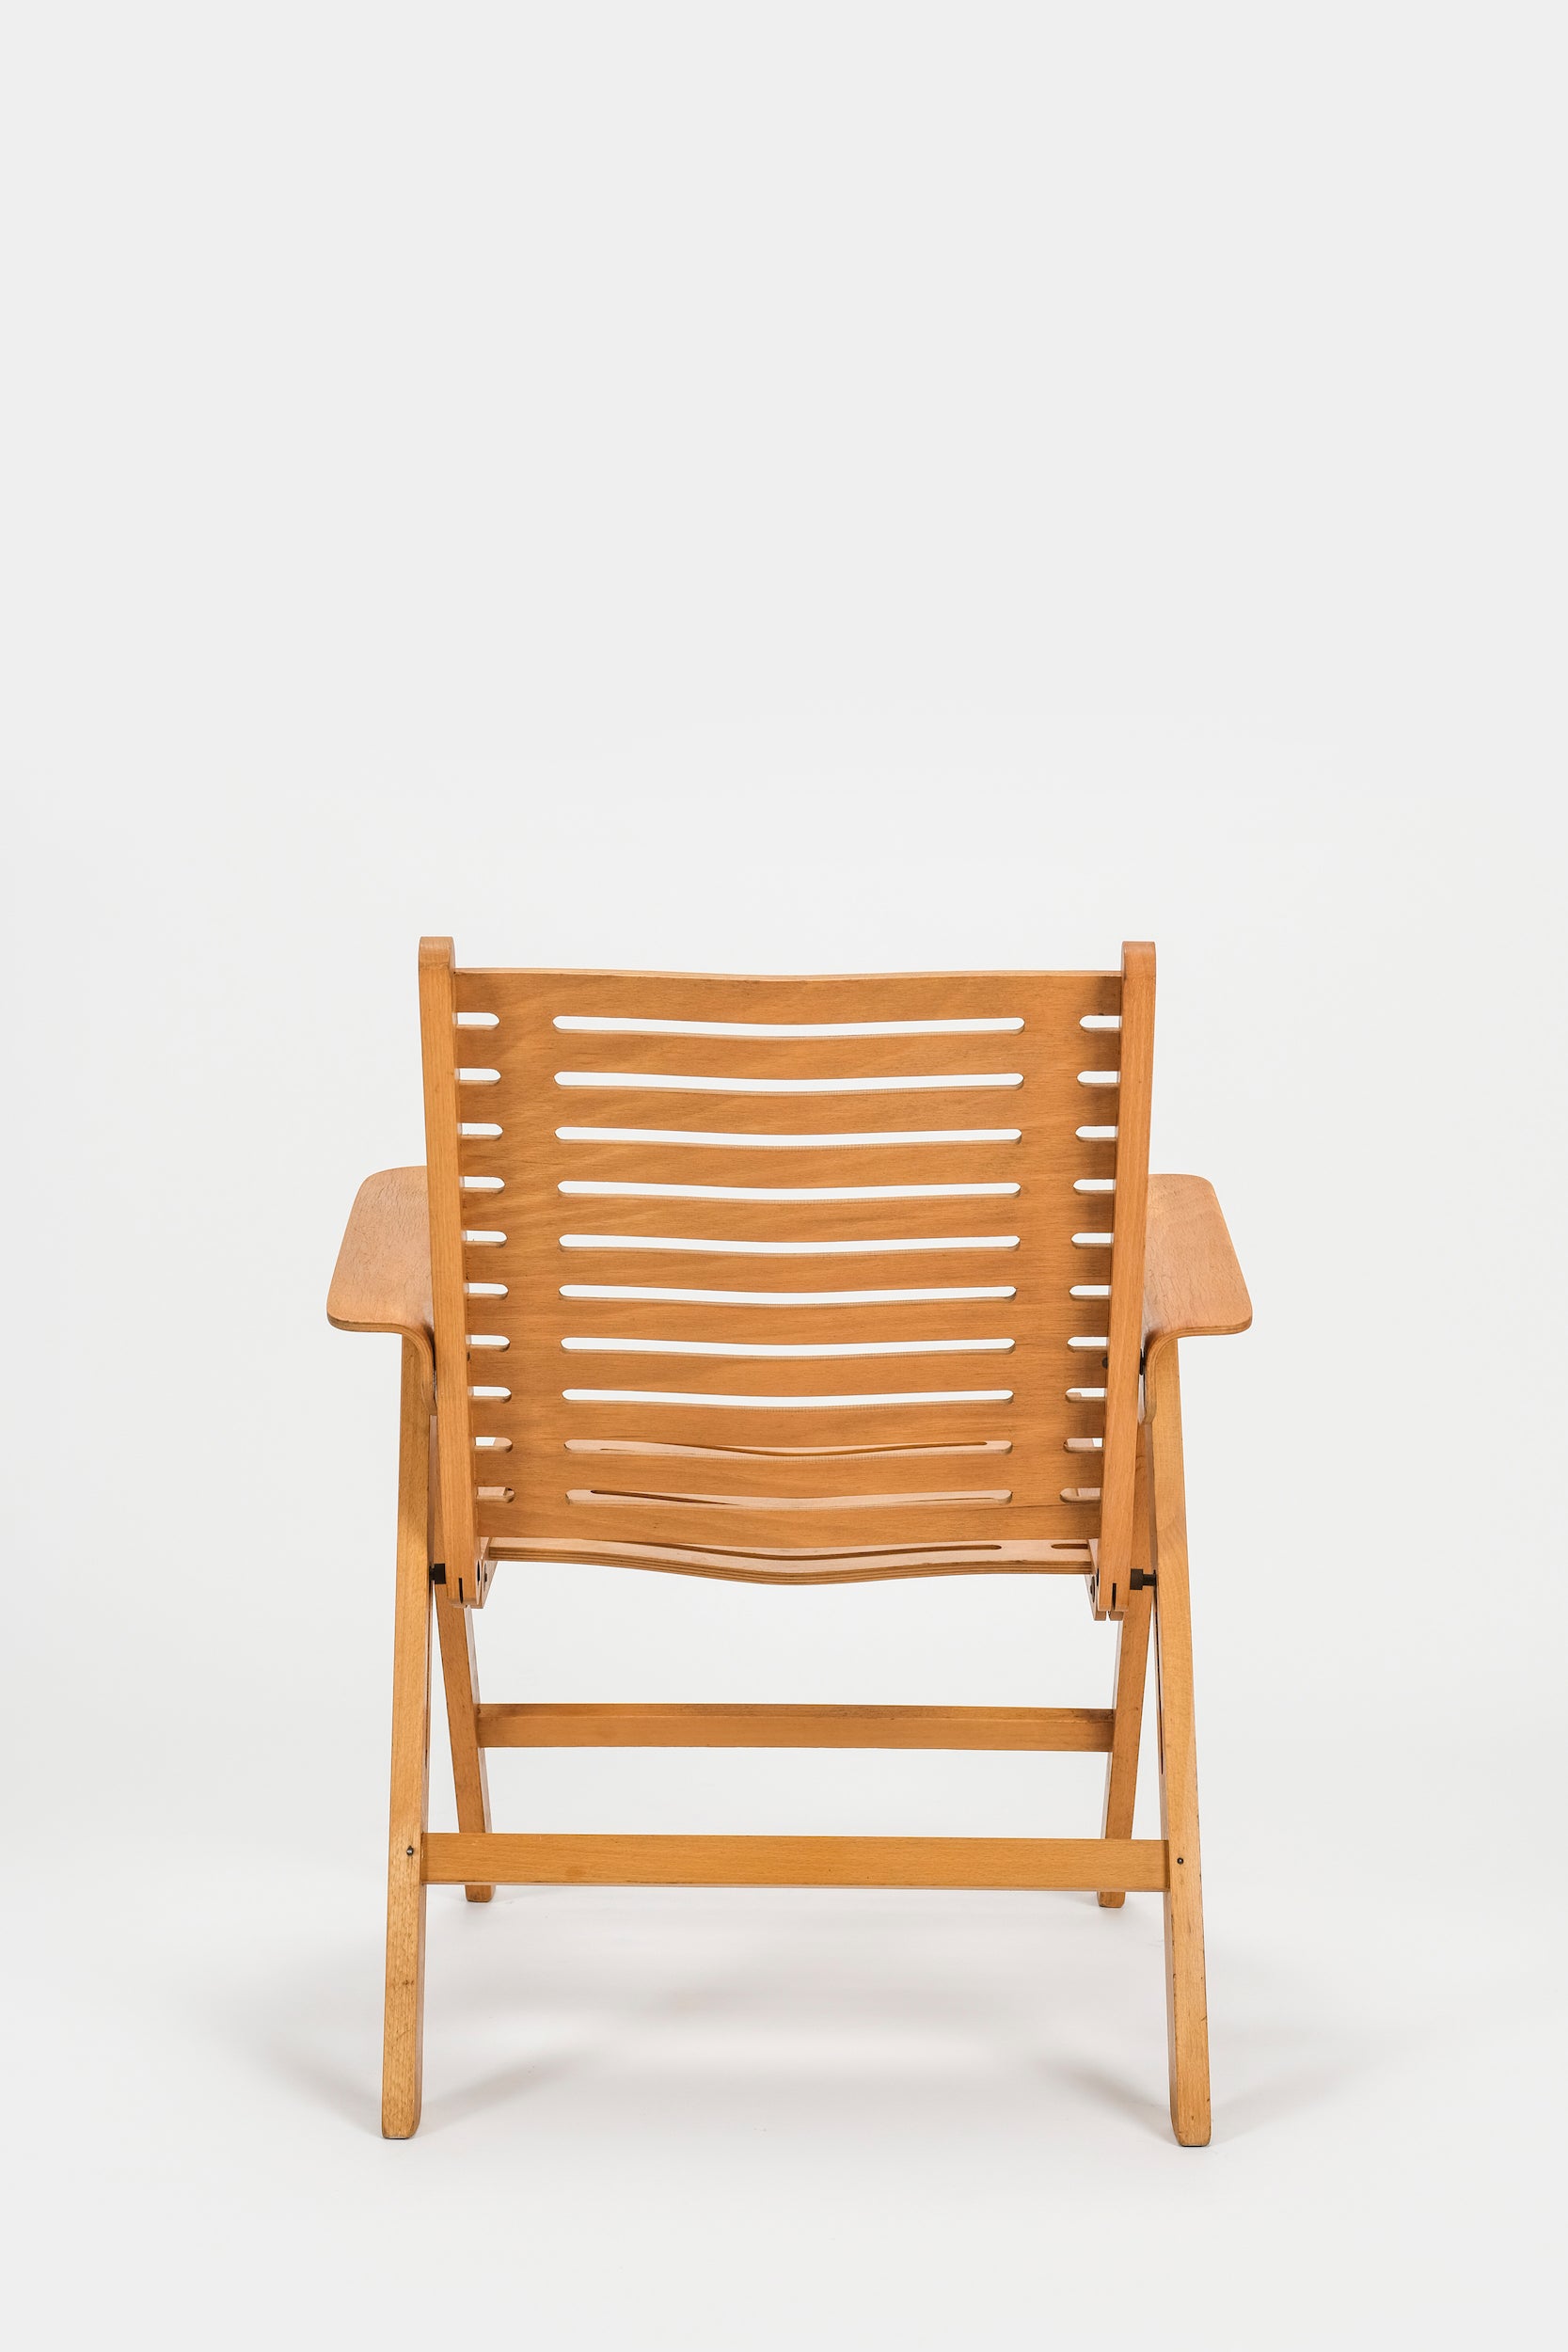 Folding chair Rex Nico Kralj Stol Industrija Pohistva 50s